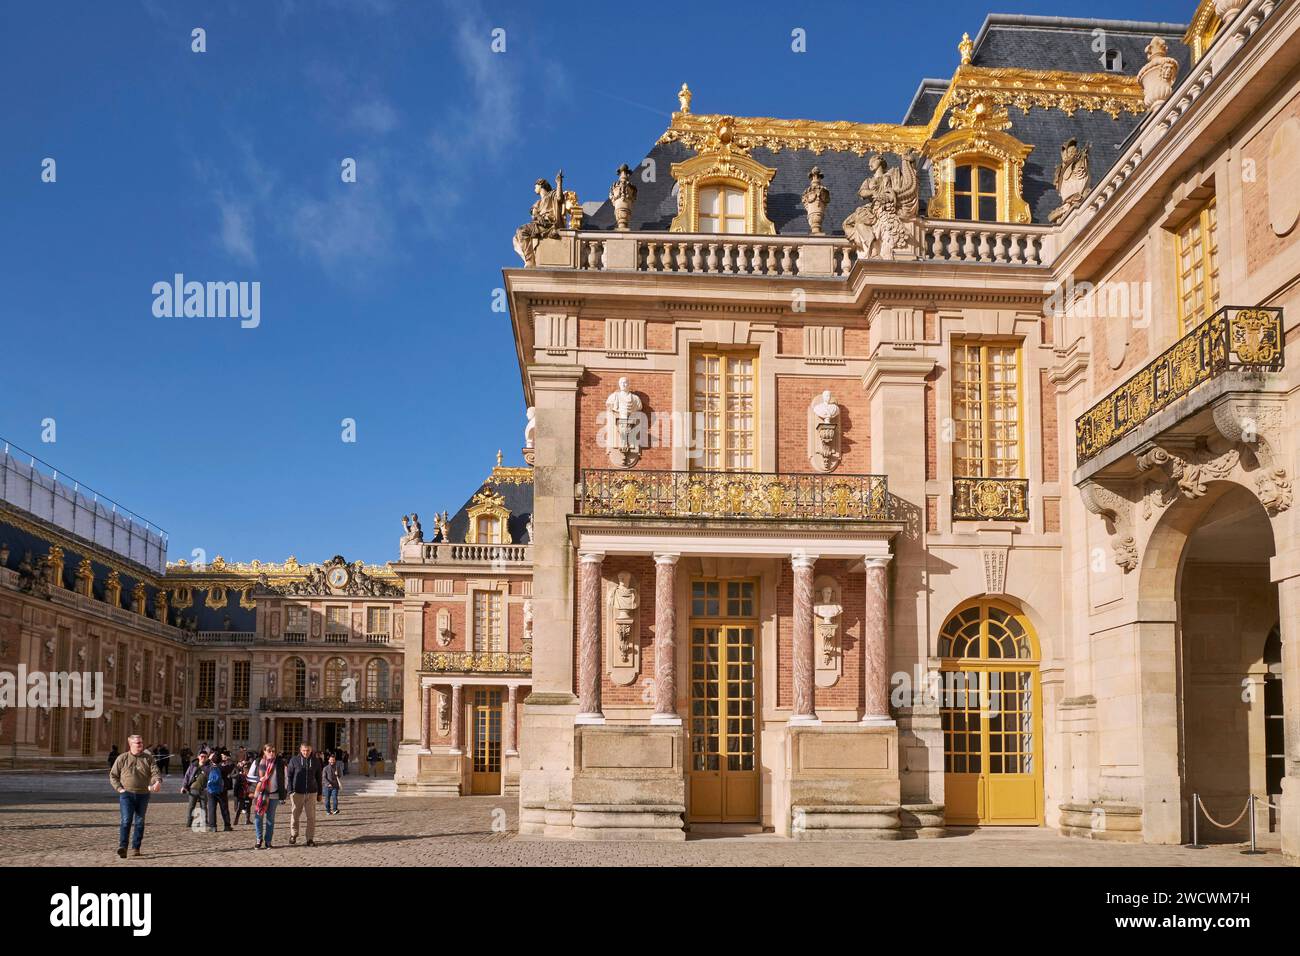 Frankreich, Yvelines, Versailles, Schloss von Versailles, das von der UNESCO zum Weltkulturerbe erklärt wurde, der Königliche Hof und der Marmorhof im Hintergrund Stockfoto